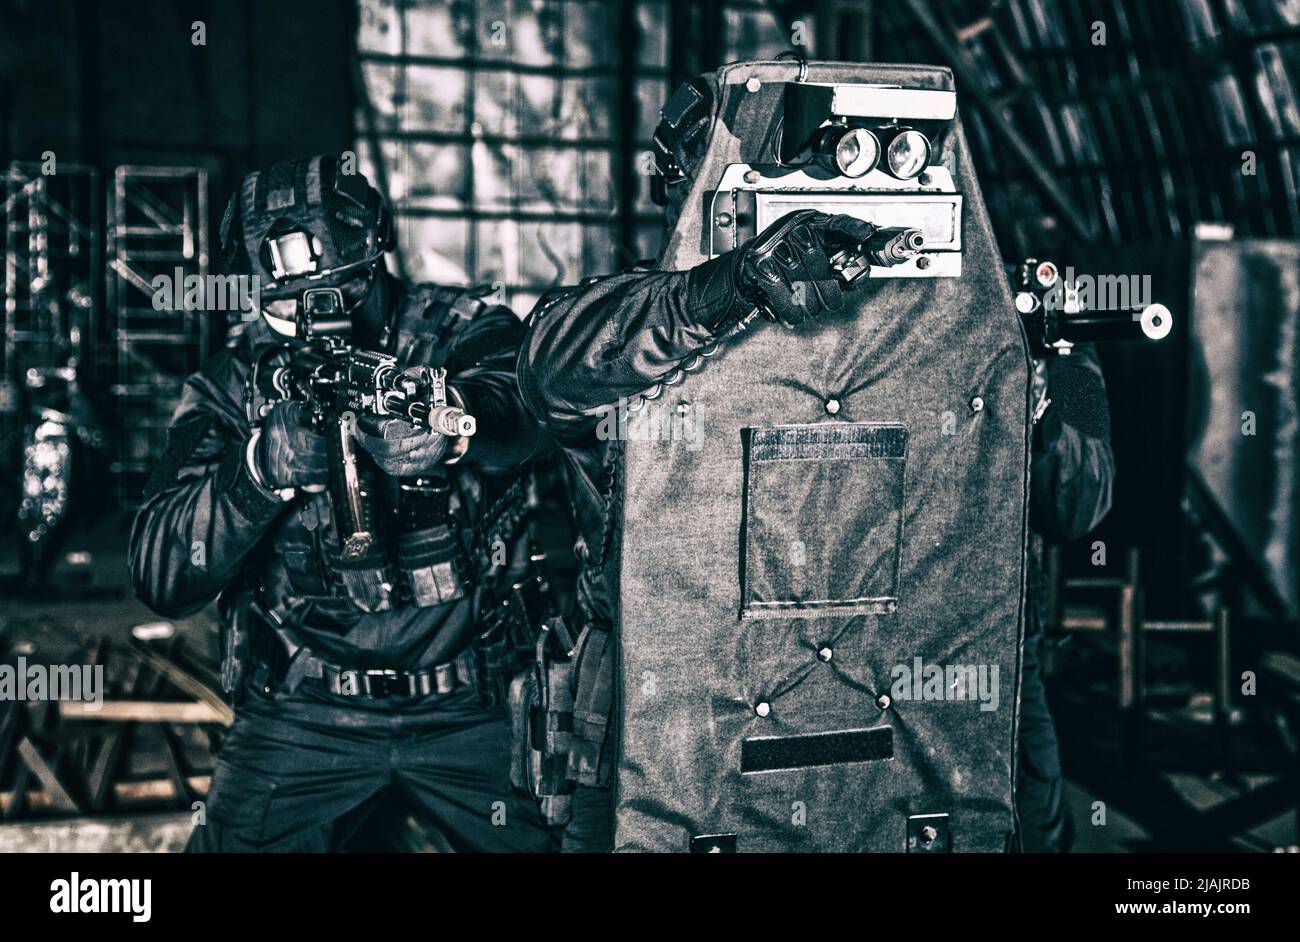 SWAT-Teamoffiziere zielen auf ihre Waffen, während sie sich während einer Nahsituation hinter einem ballistischen Schild verstecken. Stockfoto